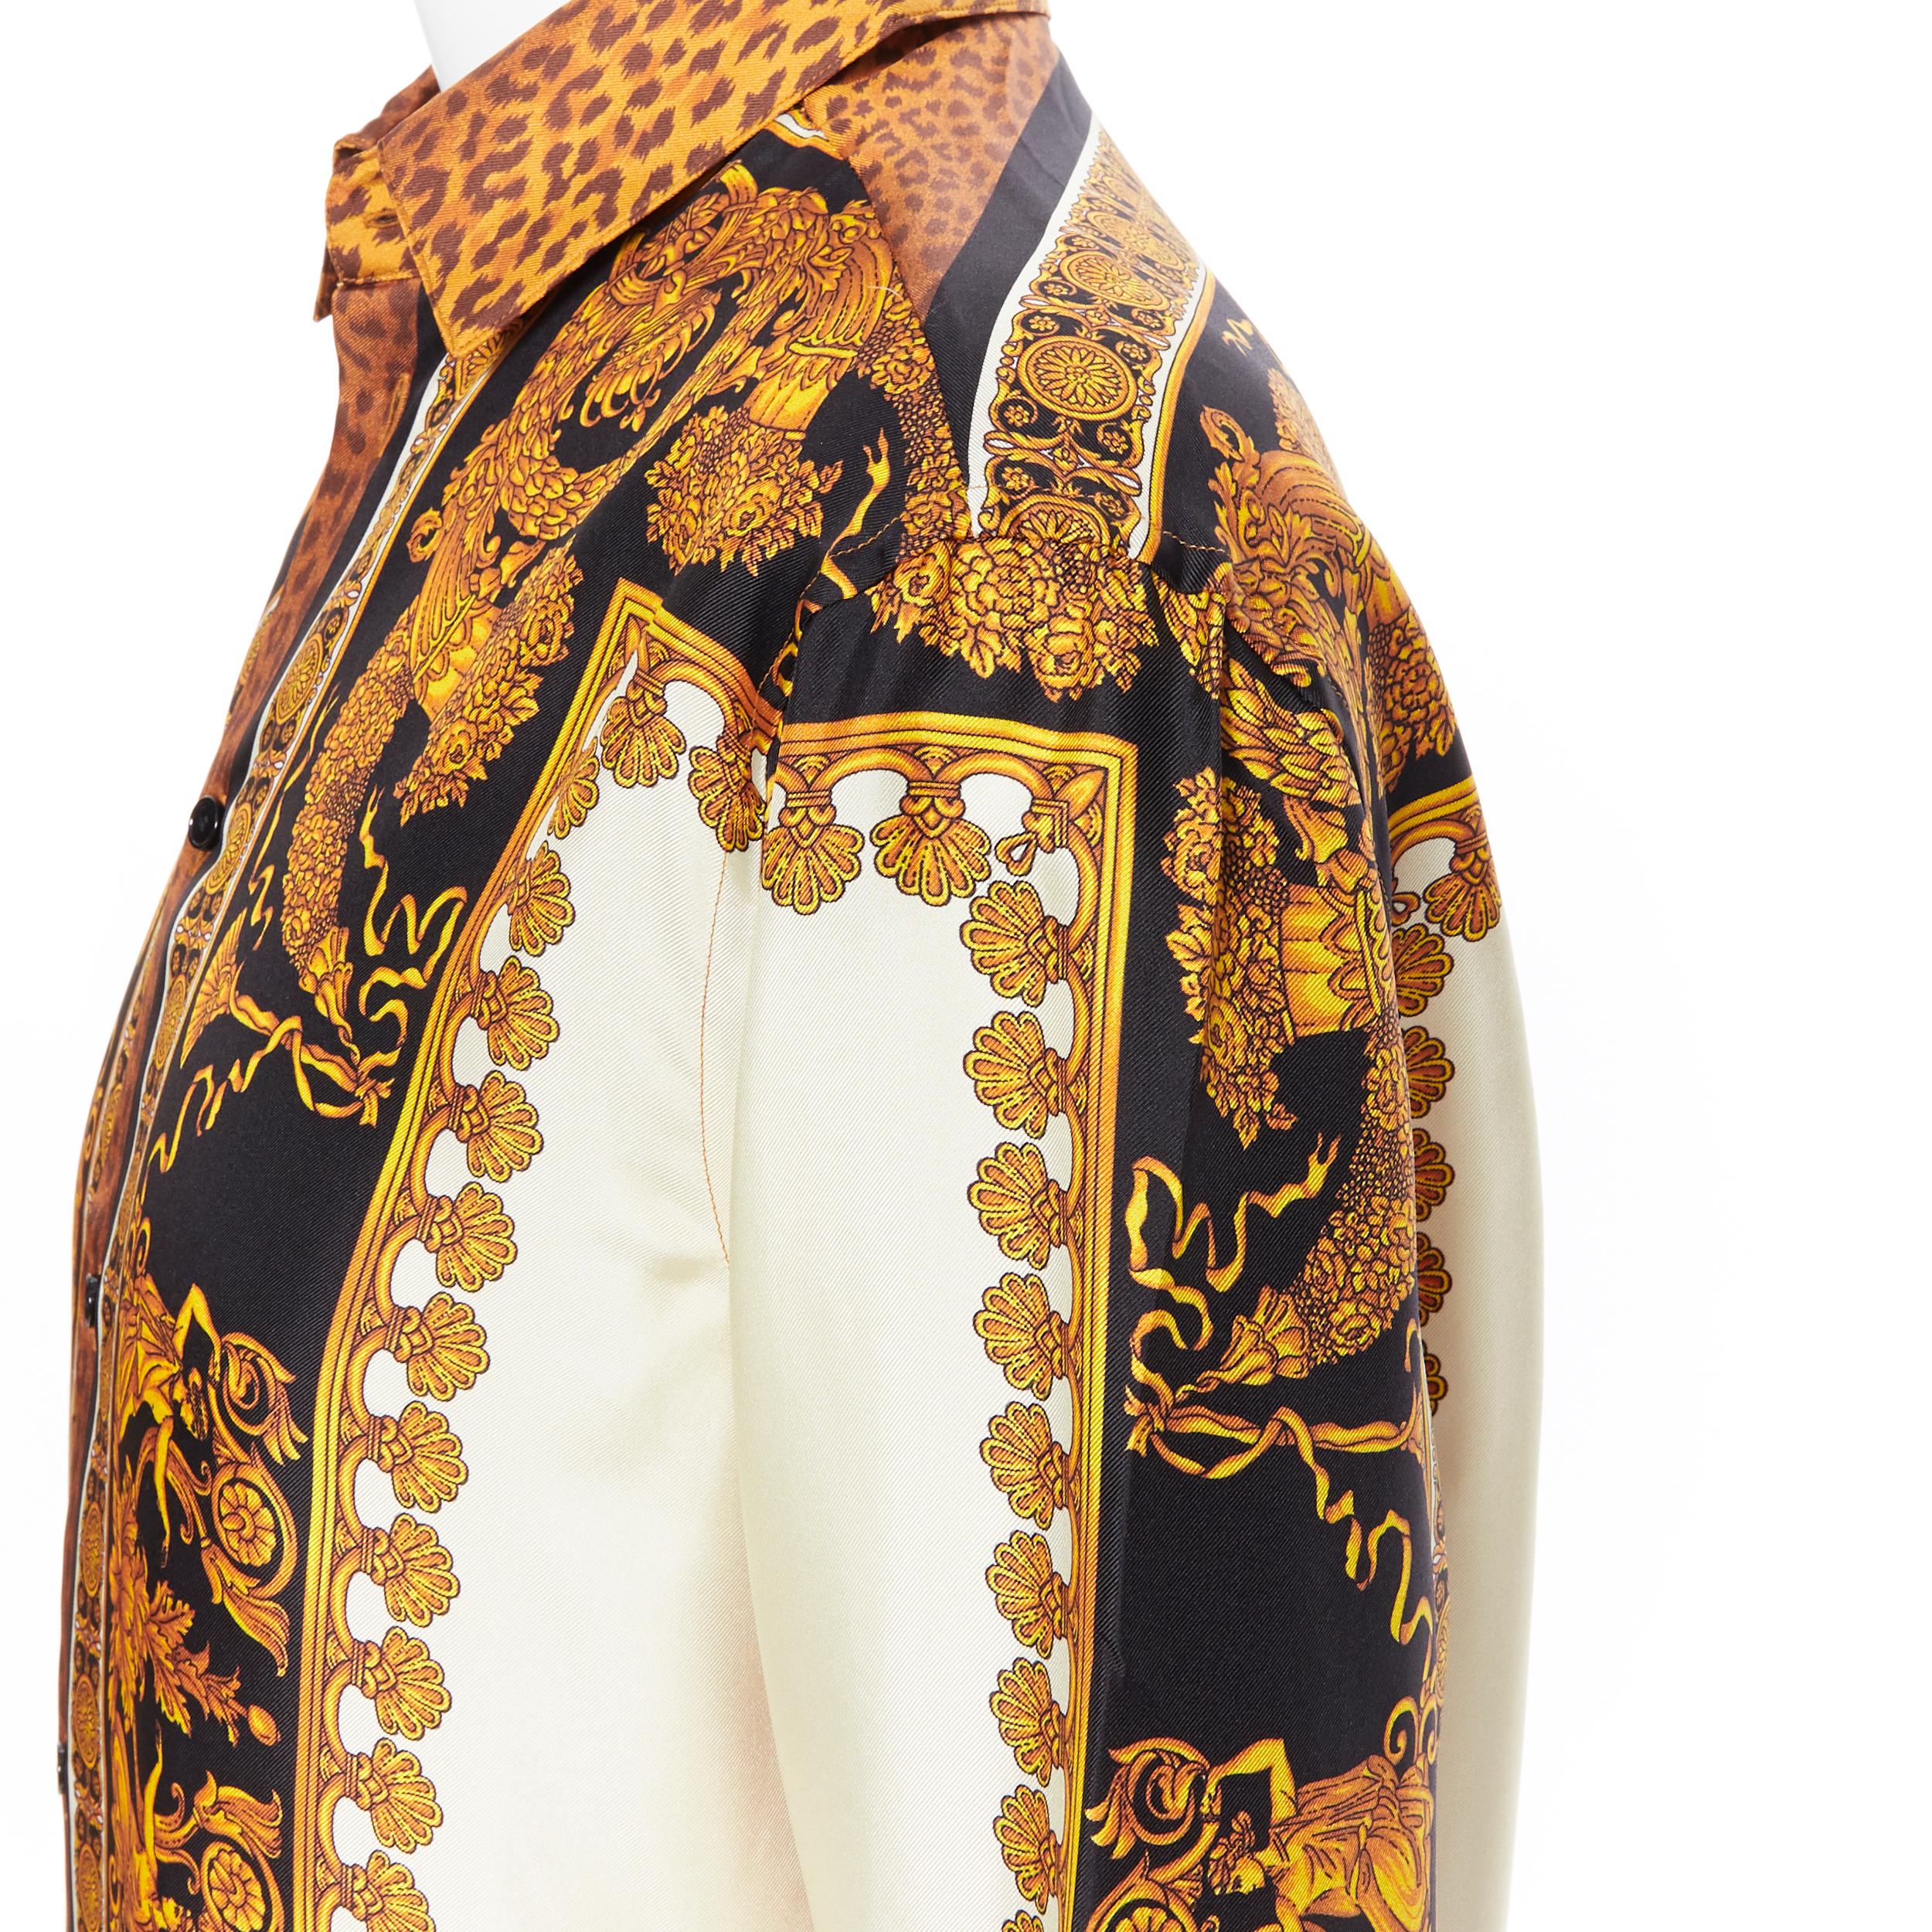 new VERSACE AW18 Runway Wild Leopard gold baroque print 100% silk shirt EU38 S 3